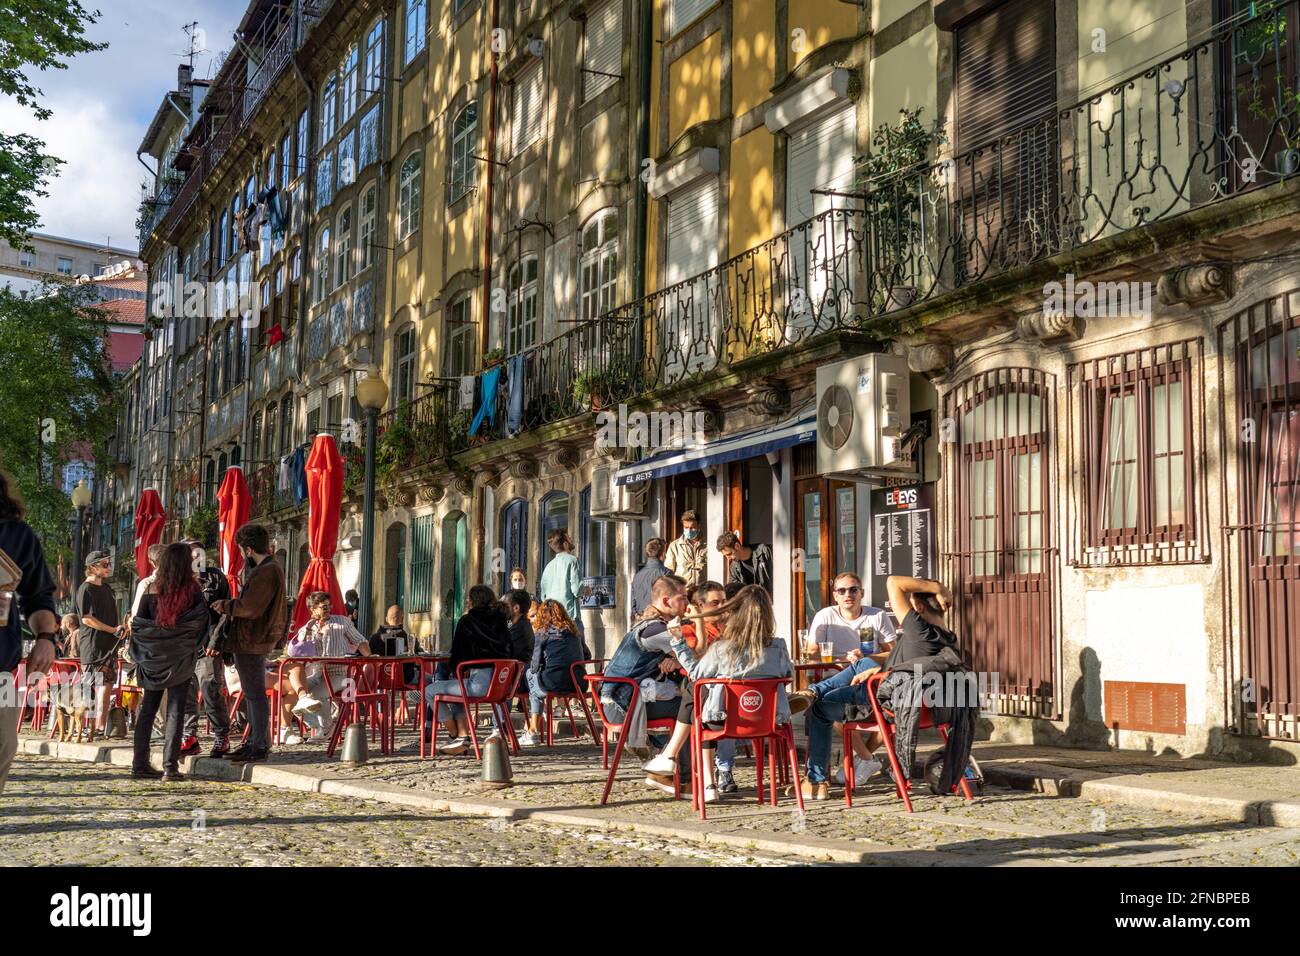 Strassen Cafe und Bar in der historischen Altstadt in Porto, Portugal, Europa   |  Street Cafe and Bar at the historic old town  in Porto, Portugal, E Stock Photo